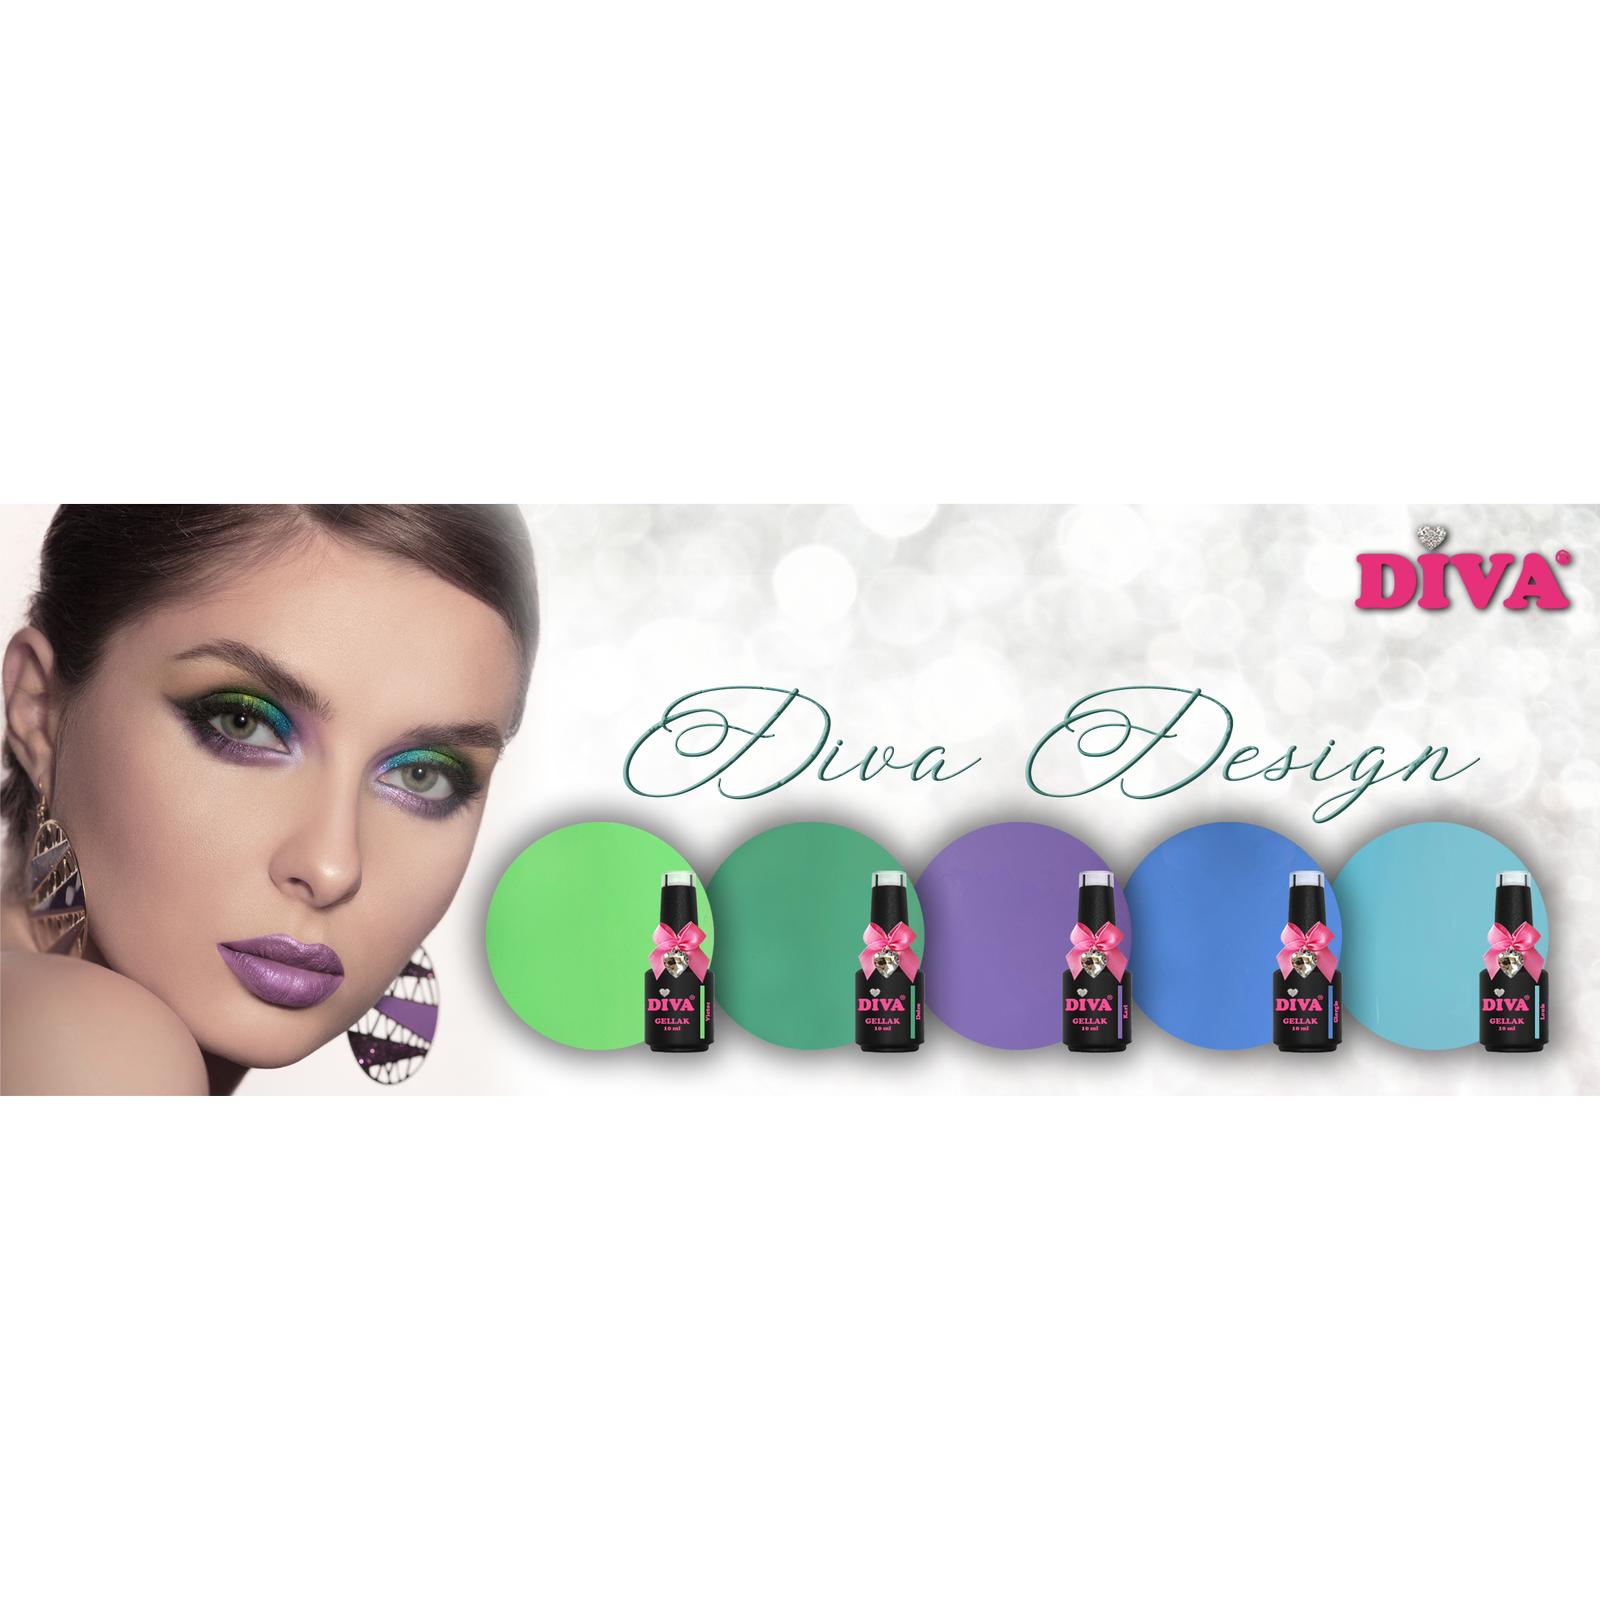 Diva collectie Diva's design